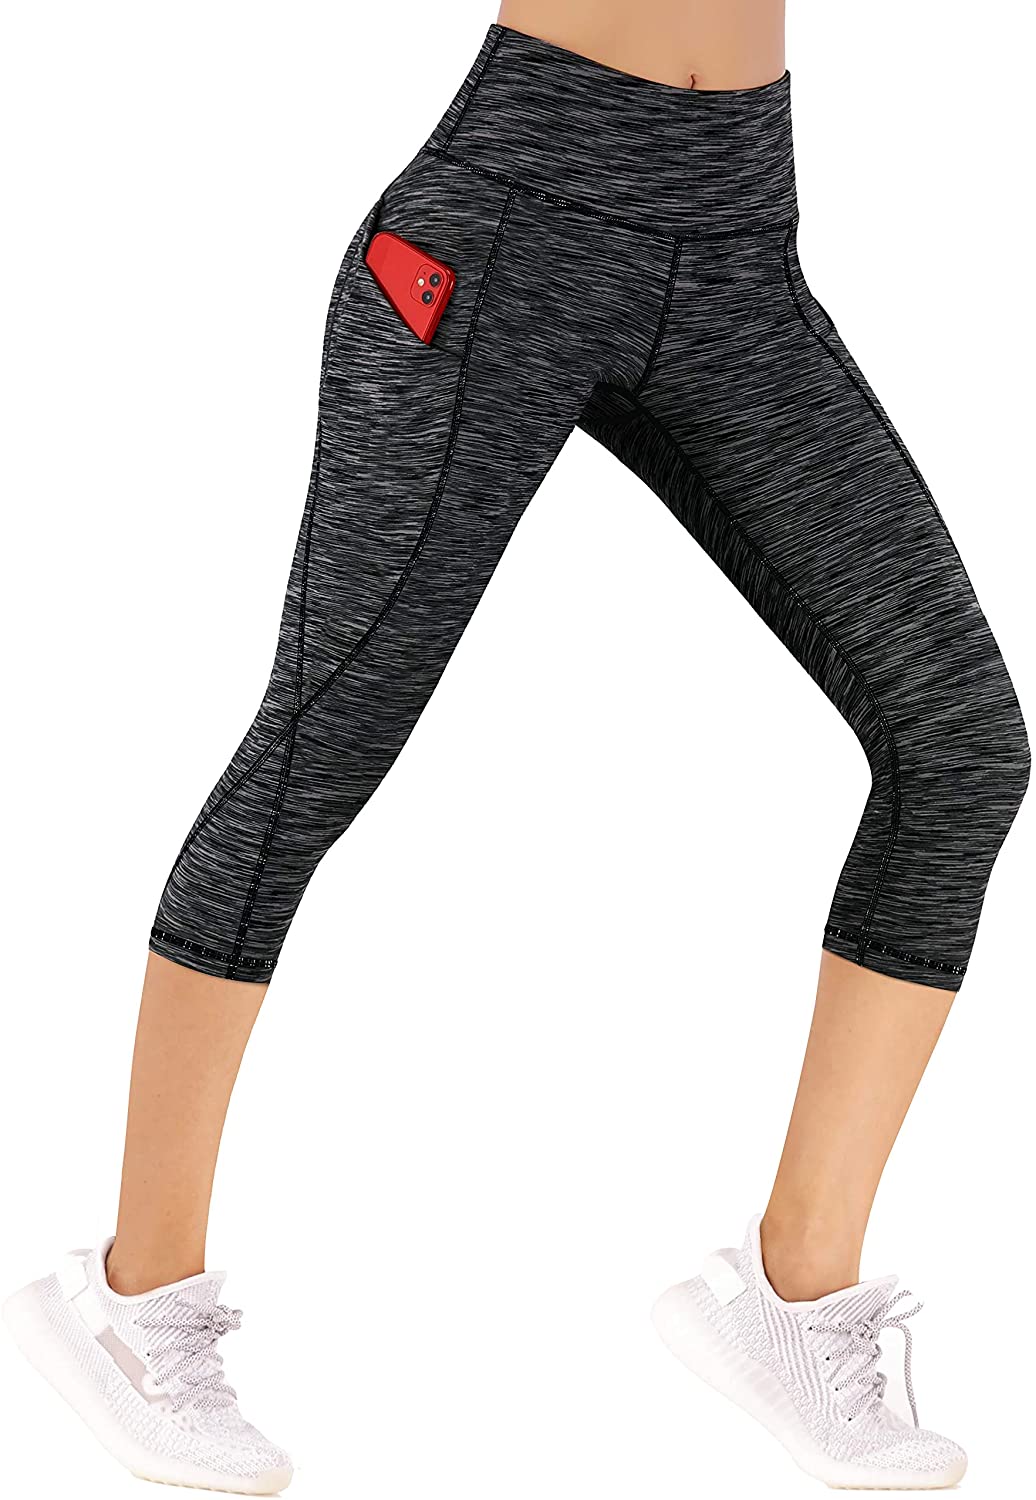 Ewedoos Leggings Yoga Pants XS New - clothing & accessories - by owner -  apparel sale - craigslist